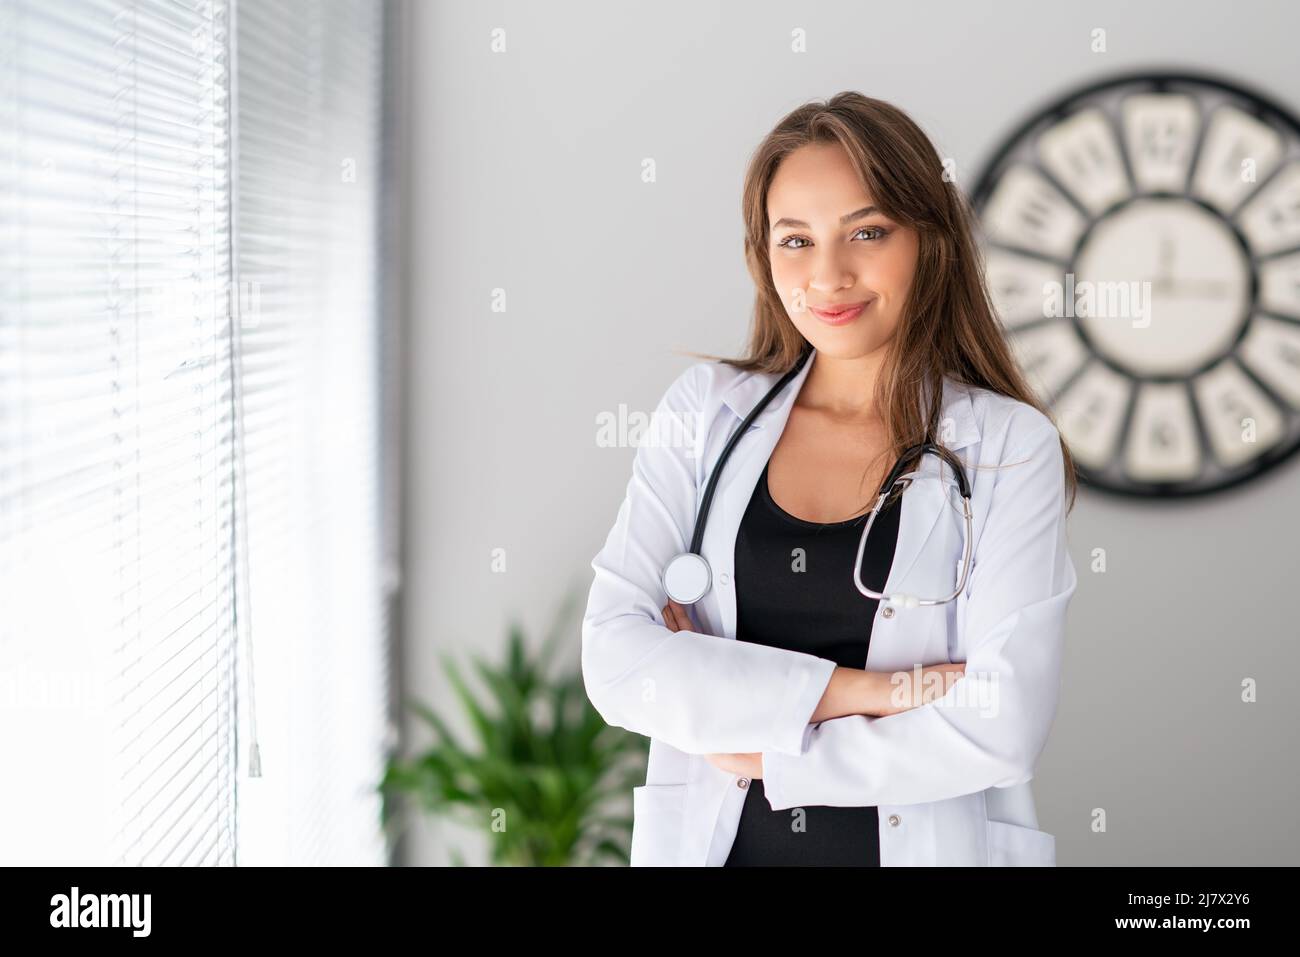 Una mujer atractiva del doctor está mirando con, la confianza y la sonrisa bonita. Fotografías de alta calidad Foto de stock